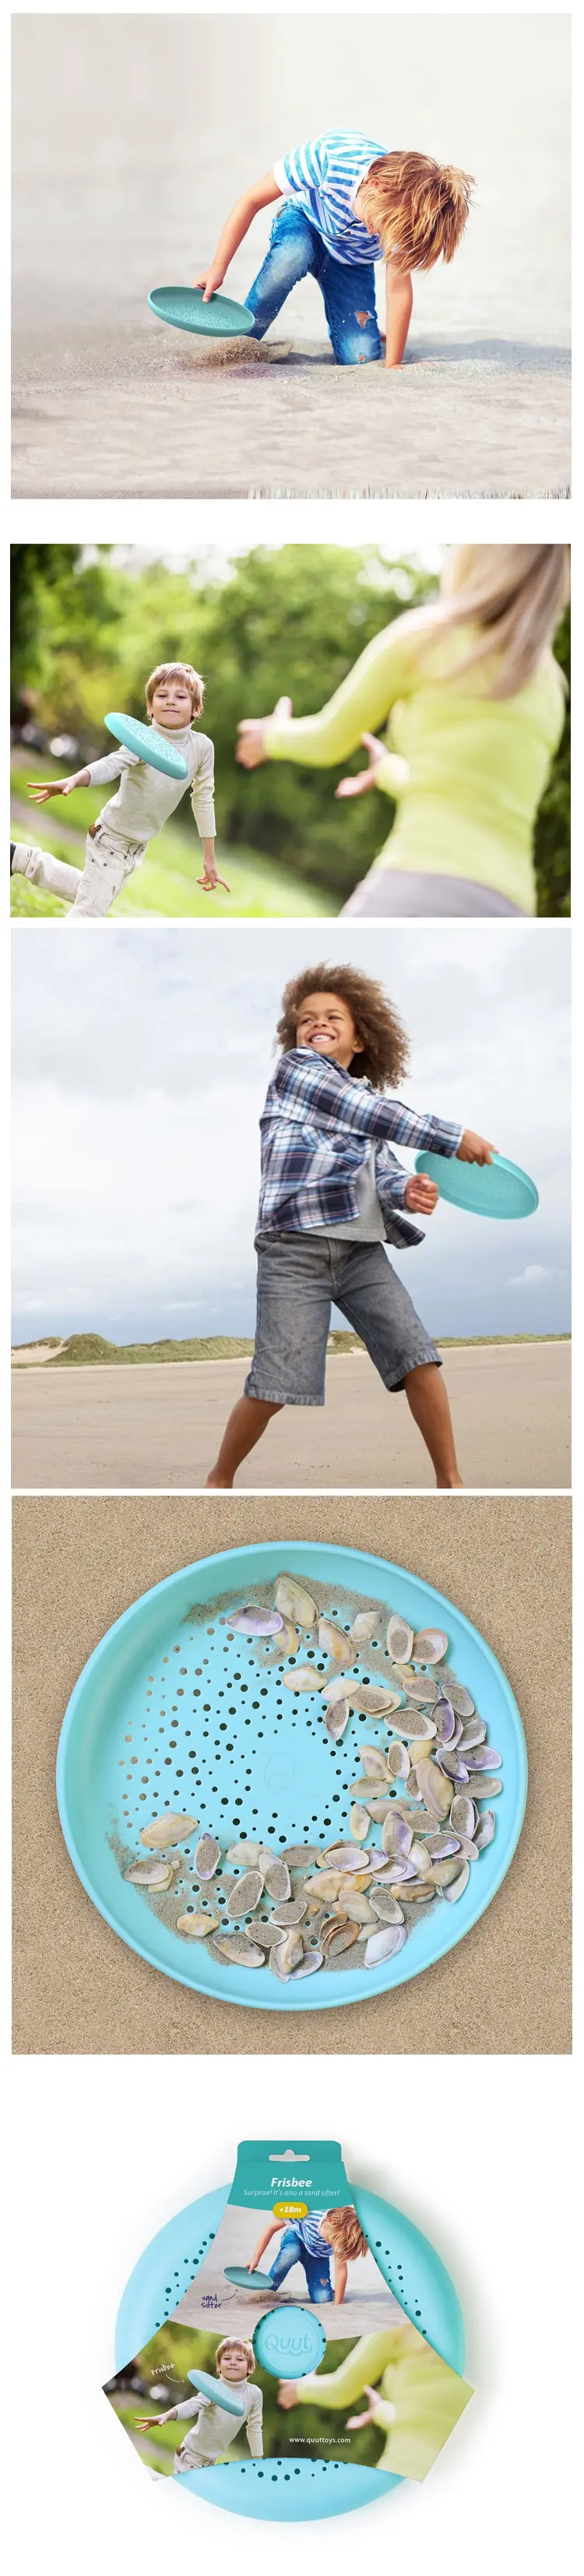 Quut Frisbee 2合1沙灘飛碟